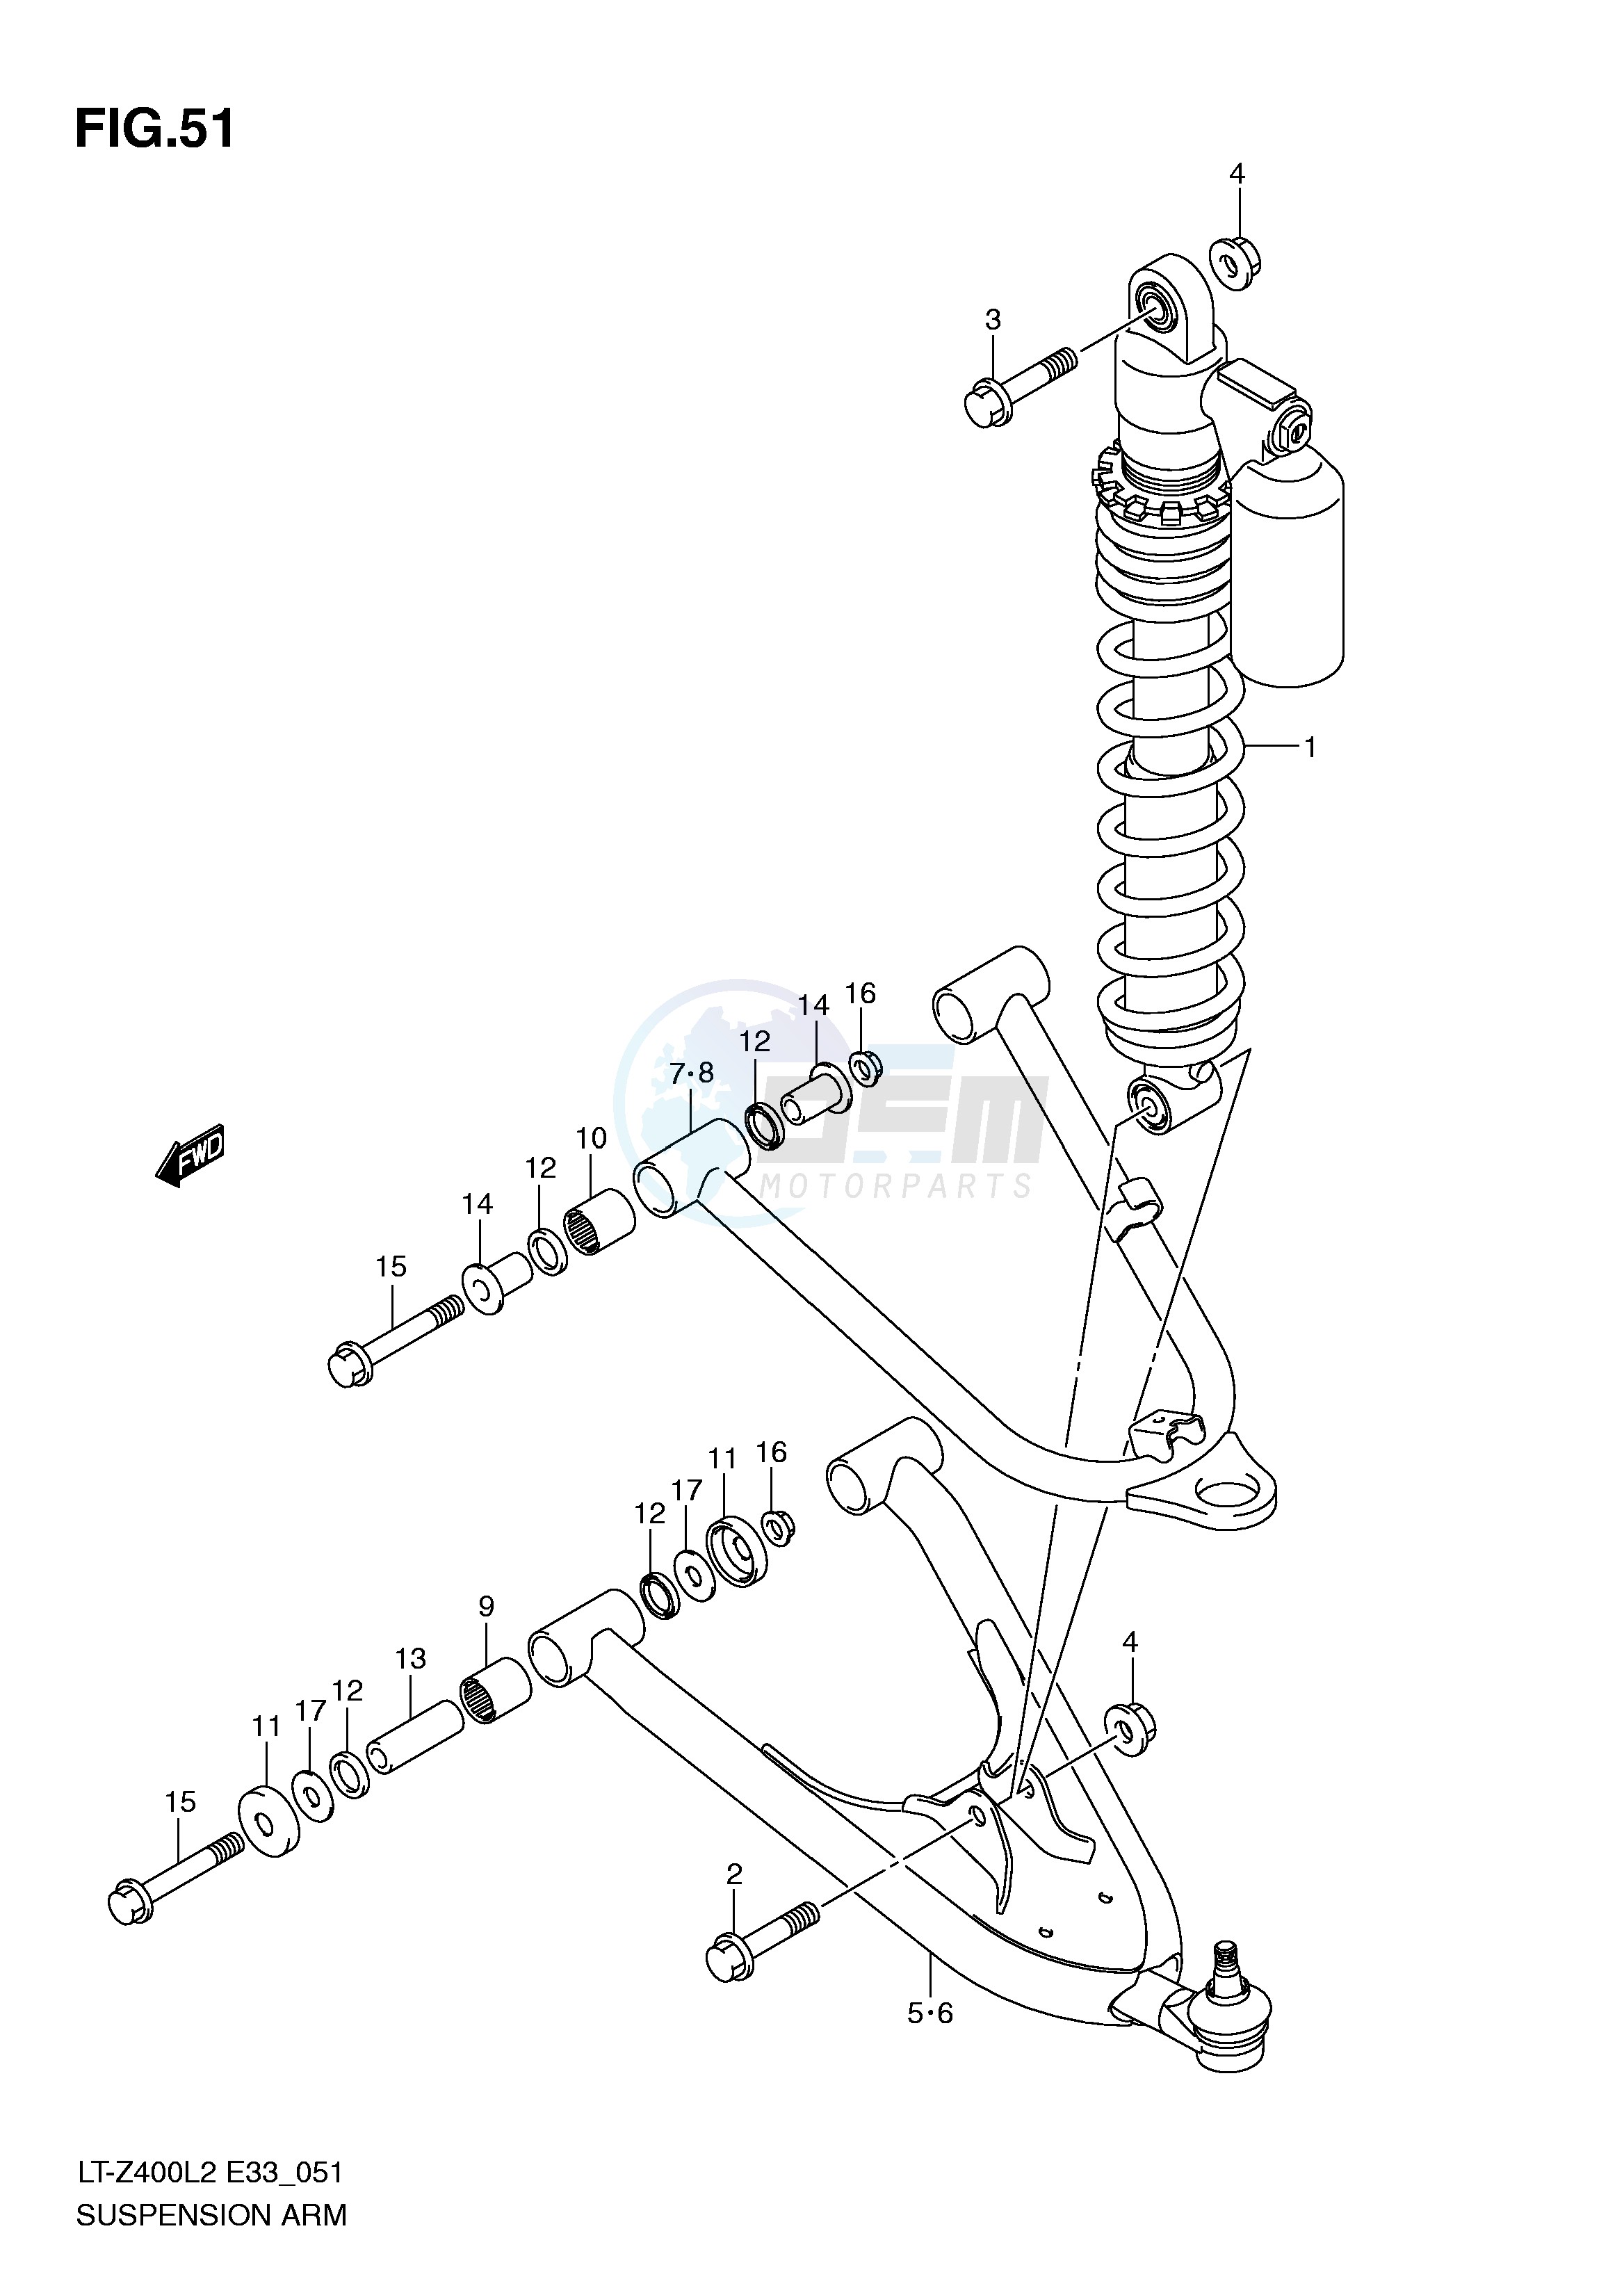 SUSPENSION ARM (LT-Z400L2 E33) blueprint